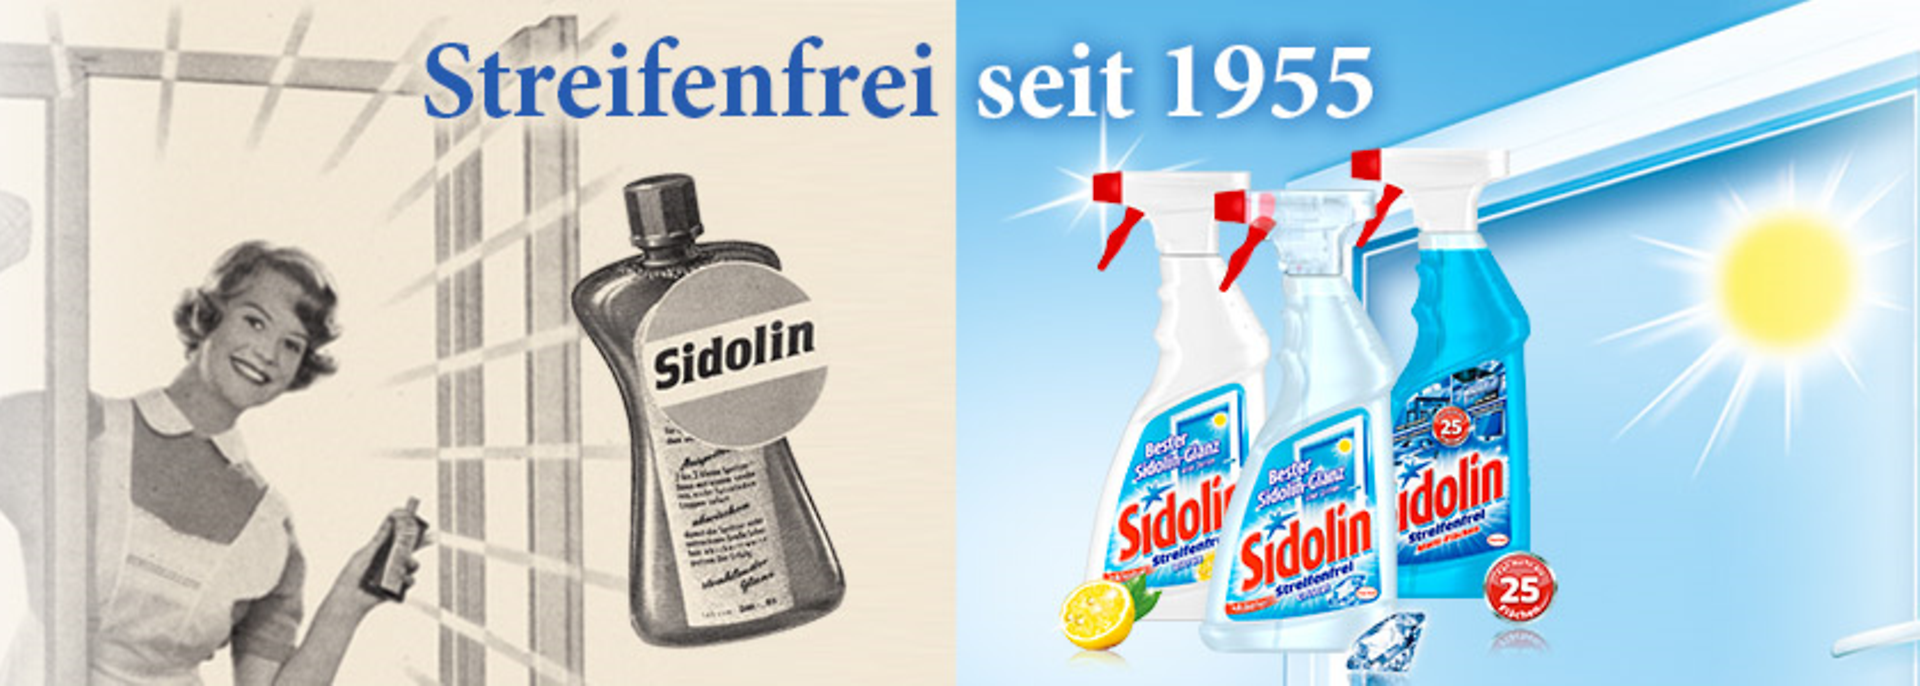 
Sidolin feiert dieses Jahr einen ganz besonderen Geburtstag: Seit 60 Jahren ist Sidolin der Glasexperte an Ihrer Seite. Bereits 1955 kam das erste Produkt auf den Markt. Heute bietet Sidolin zahlreiche Produkte für ganz unterschiedliche Reinigungsbedürfnisse.